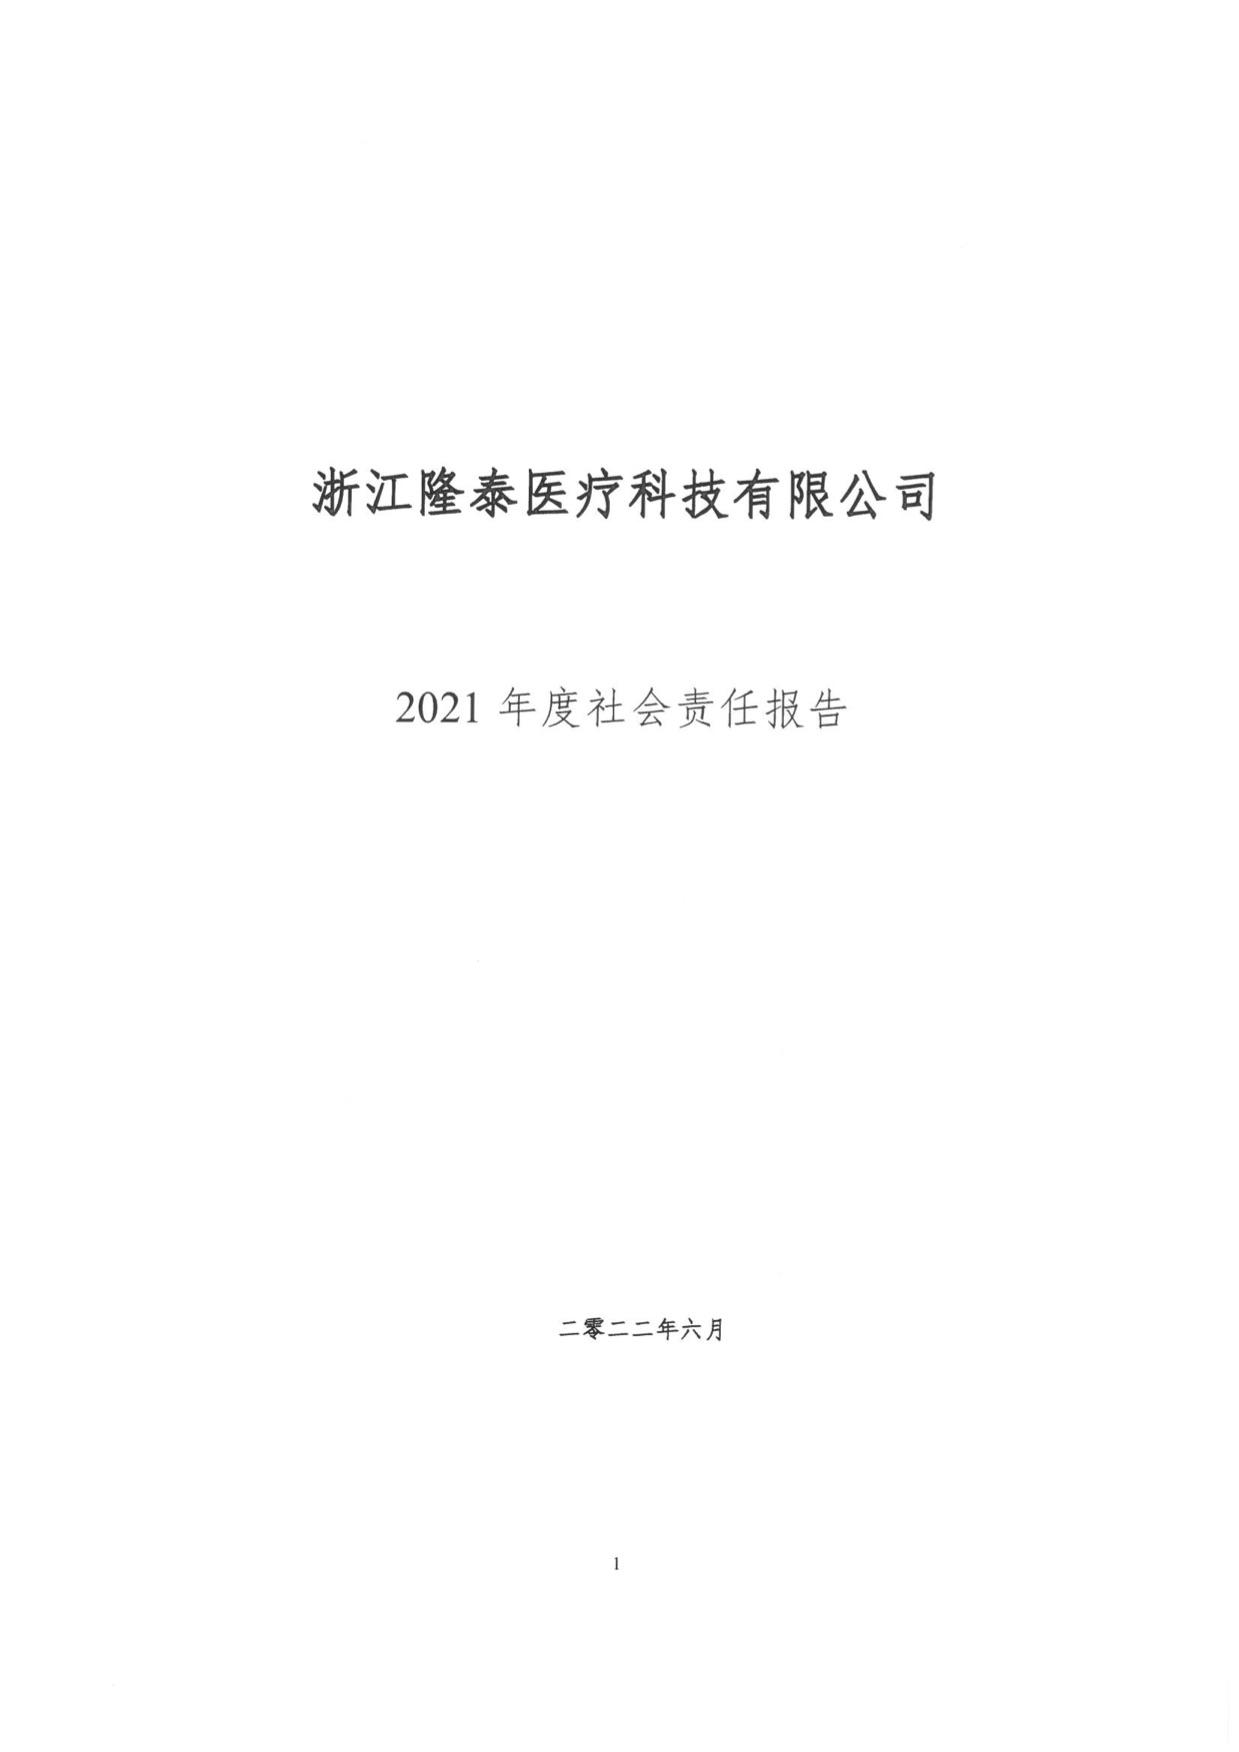 关于2021年度社会责任报告公示